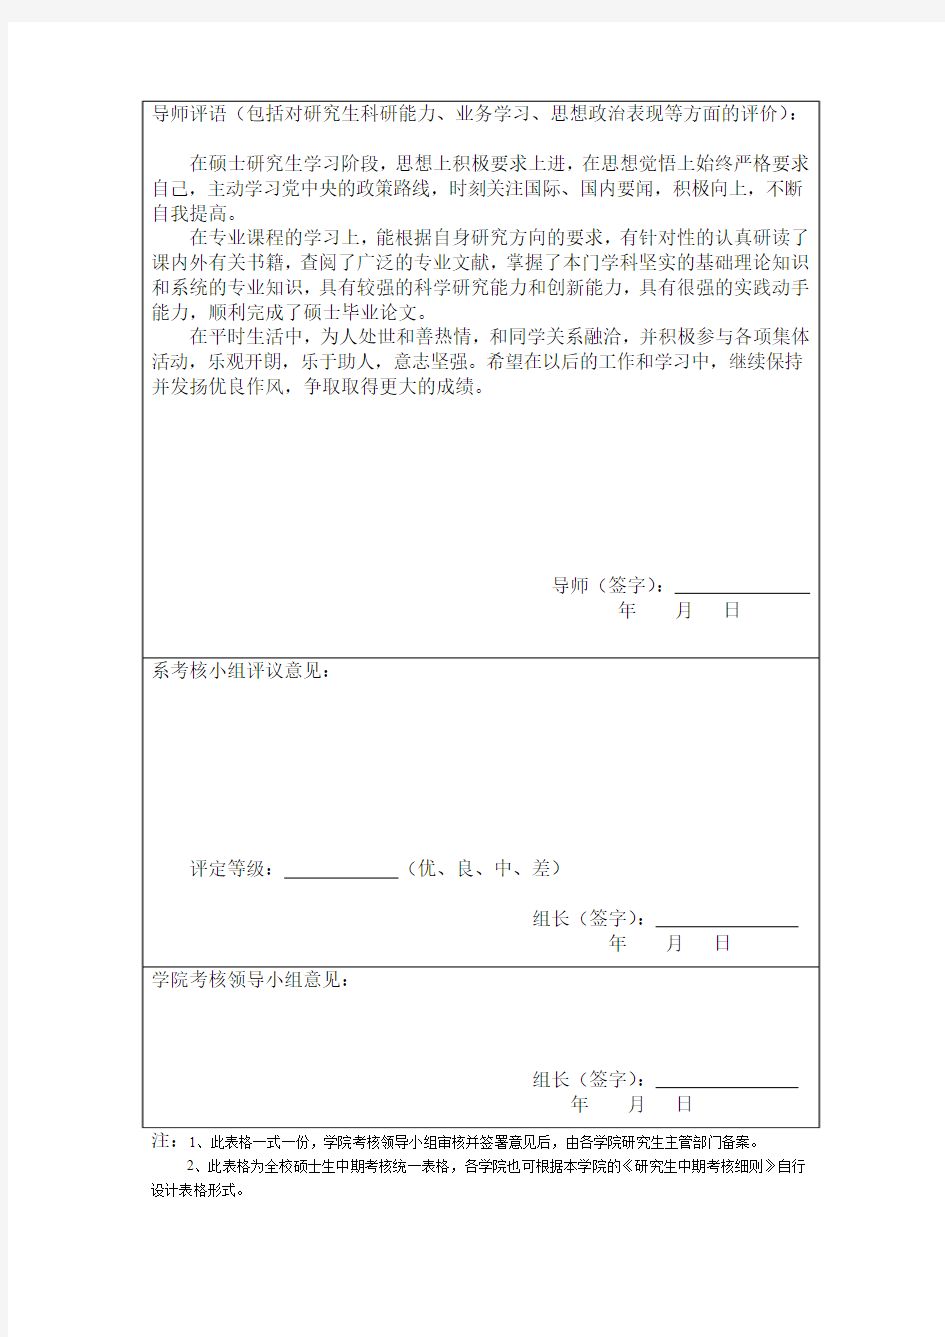 天津大学硕士生中期考核登记表